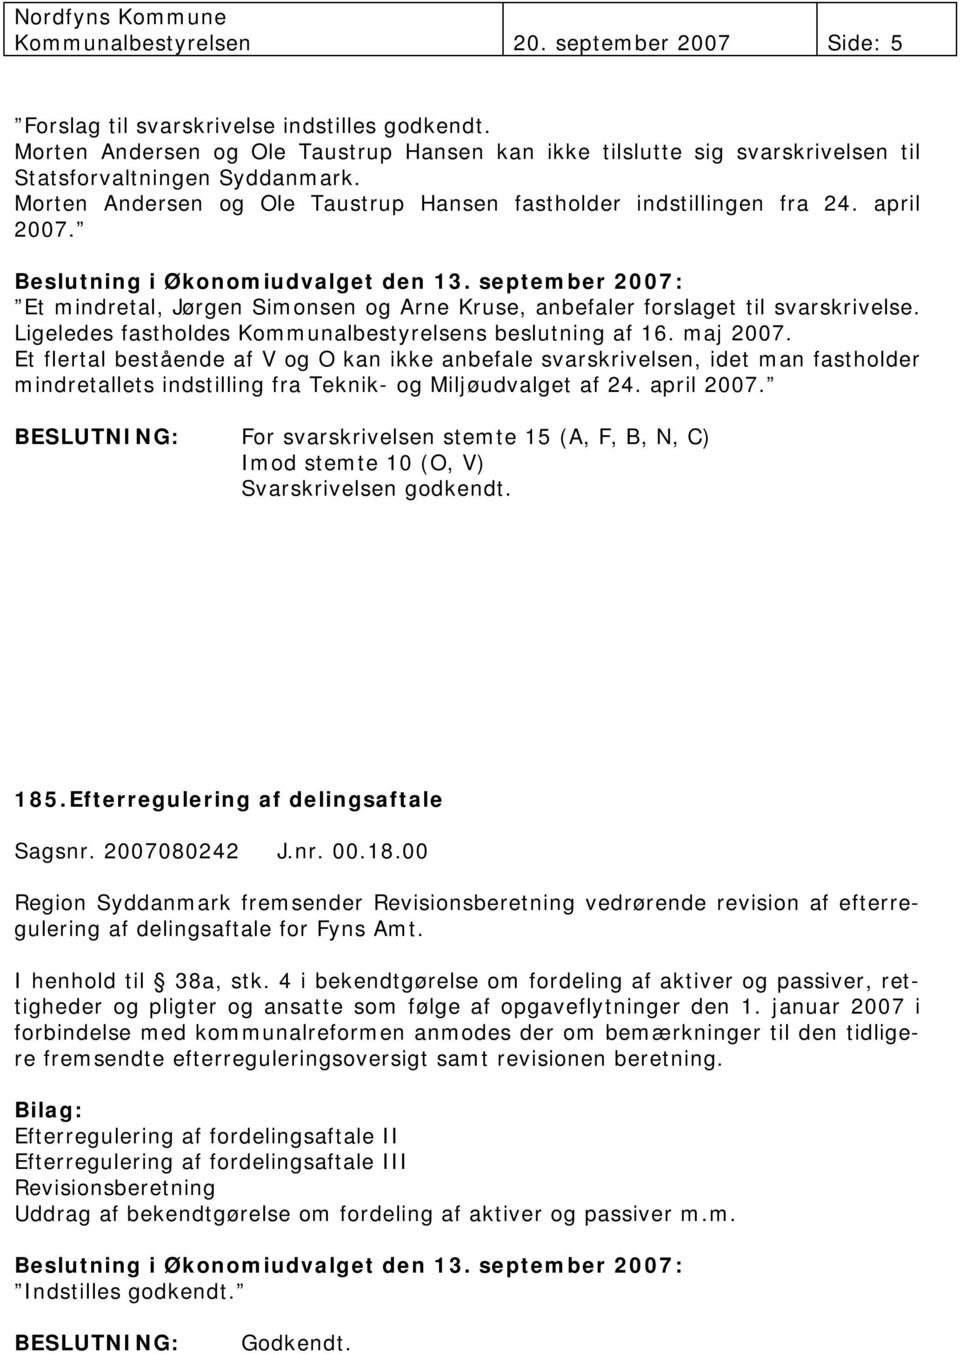 Et mindretal, Jørgen Simonsen og Arne Kruse, anbefaler forslaget til svarskrivelse. Ligeledes fastholdes Kommunalbestyrelsens beslutning af 16. maj 2007.